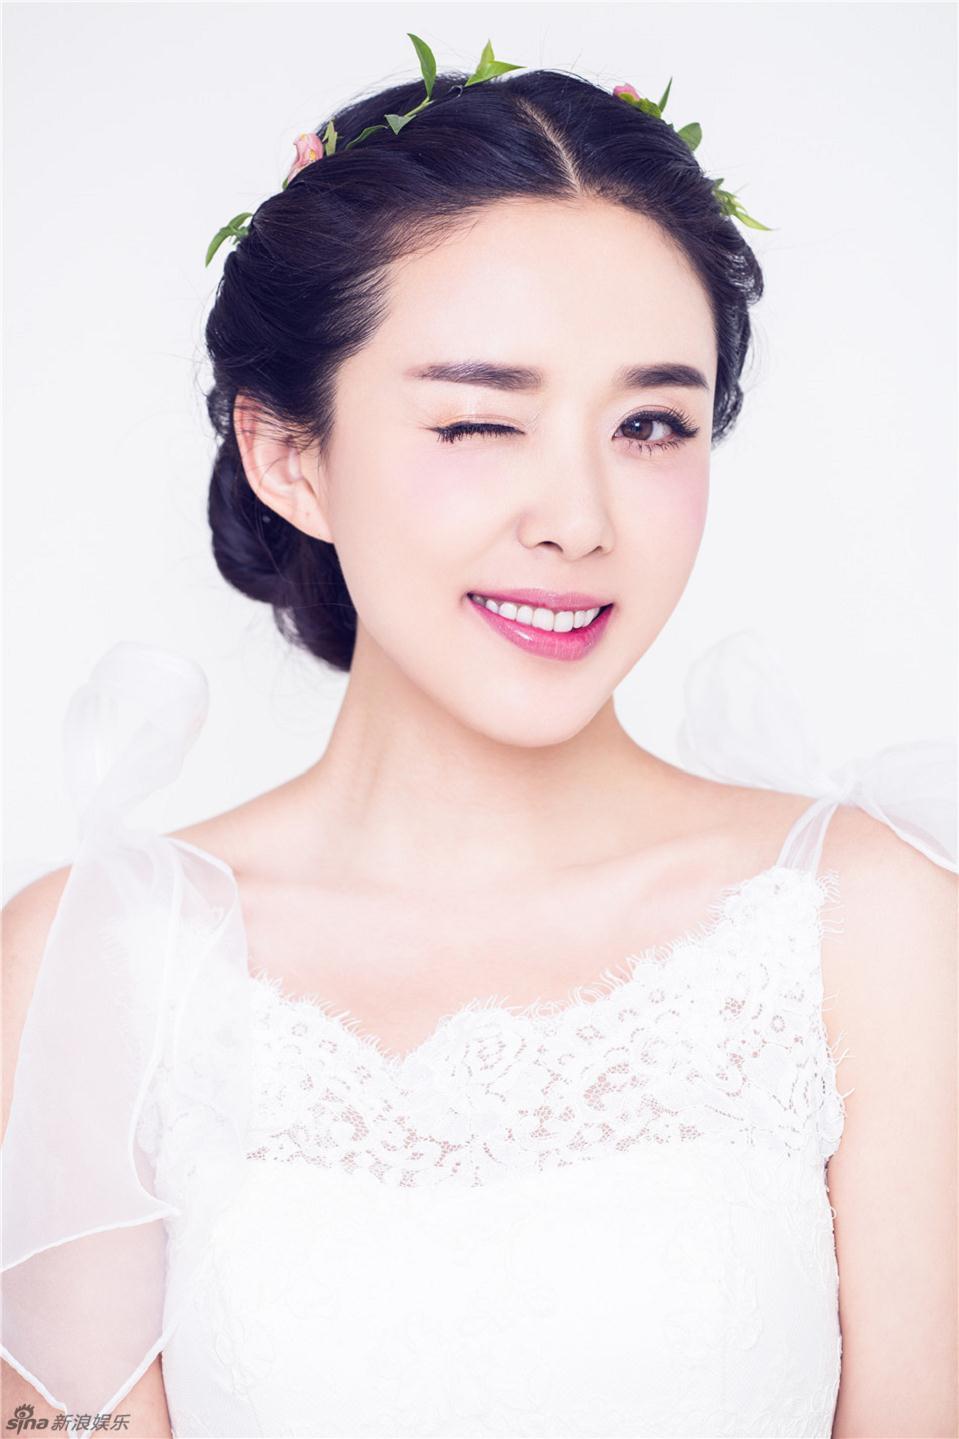 颜丹晨梦幻新娘写真 诠释幸福女人,颜丹晨梦幻新娘写真 诠释幸福女人